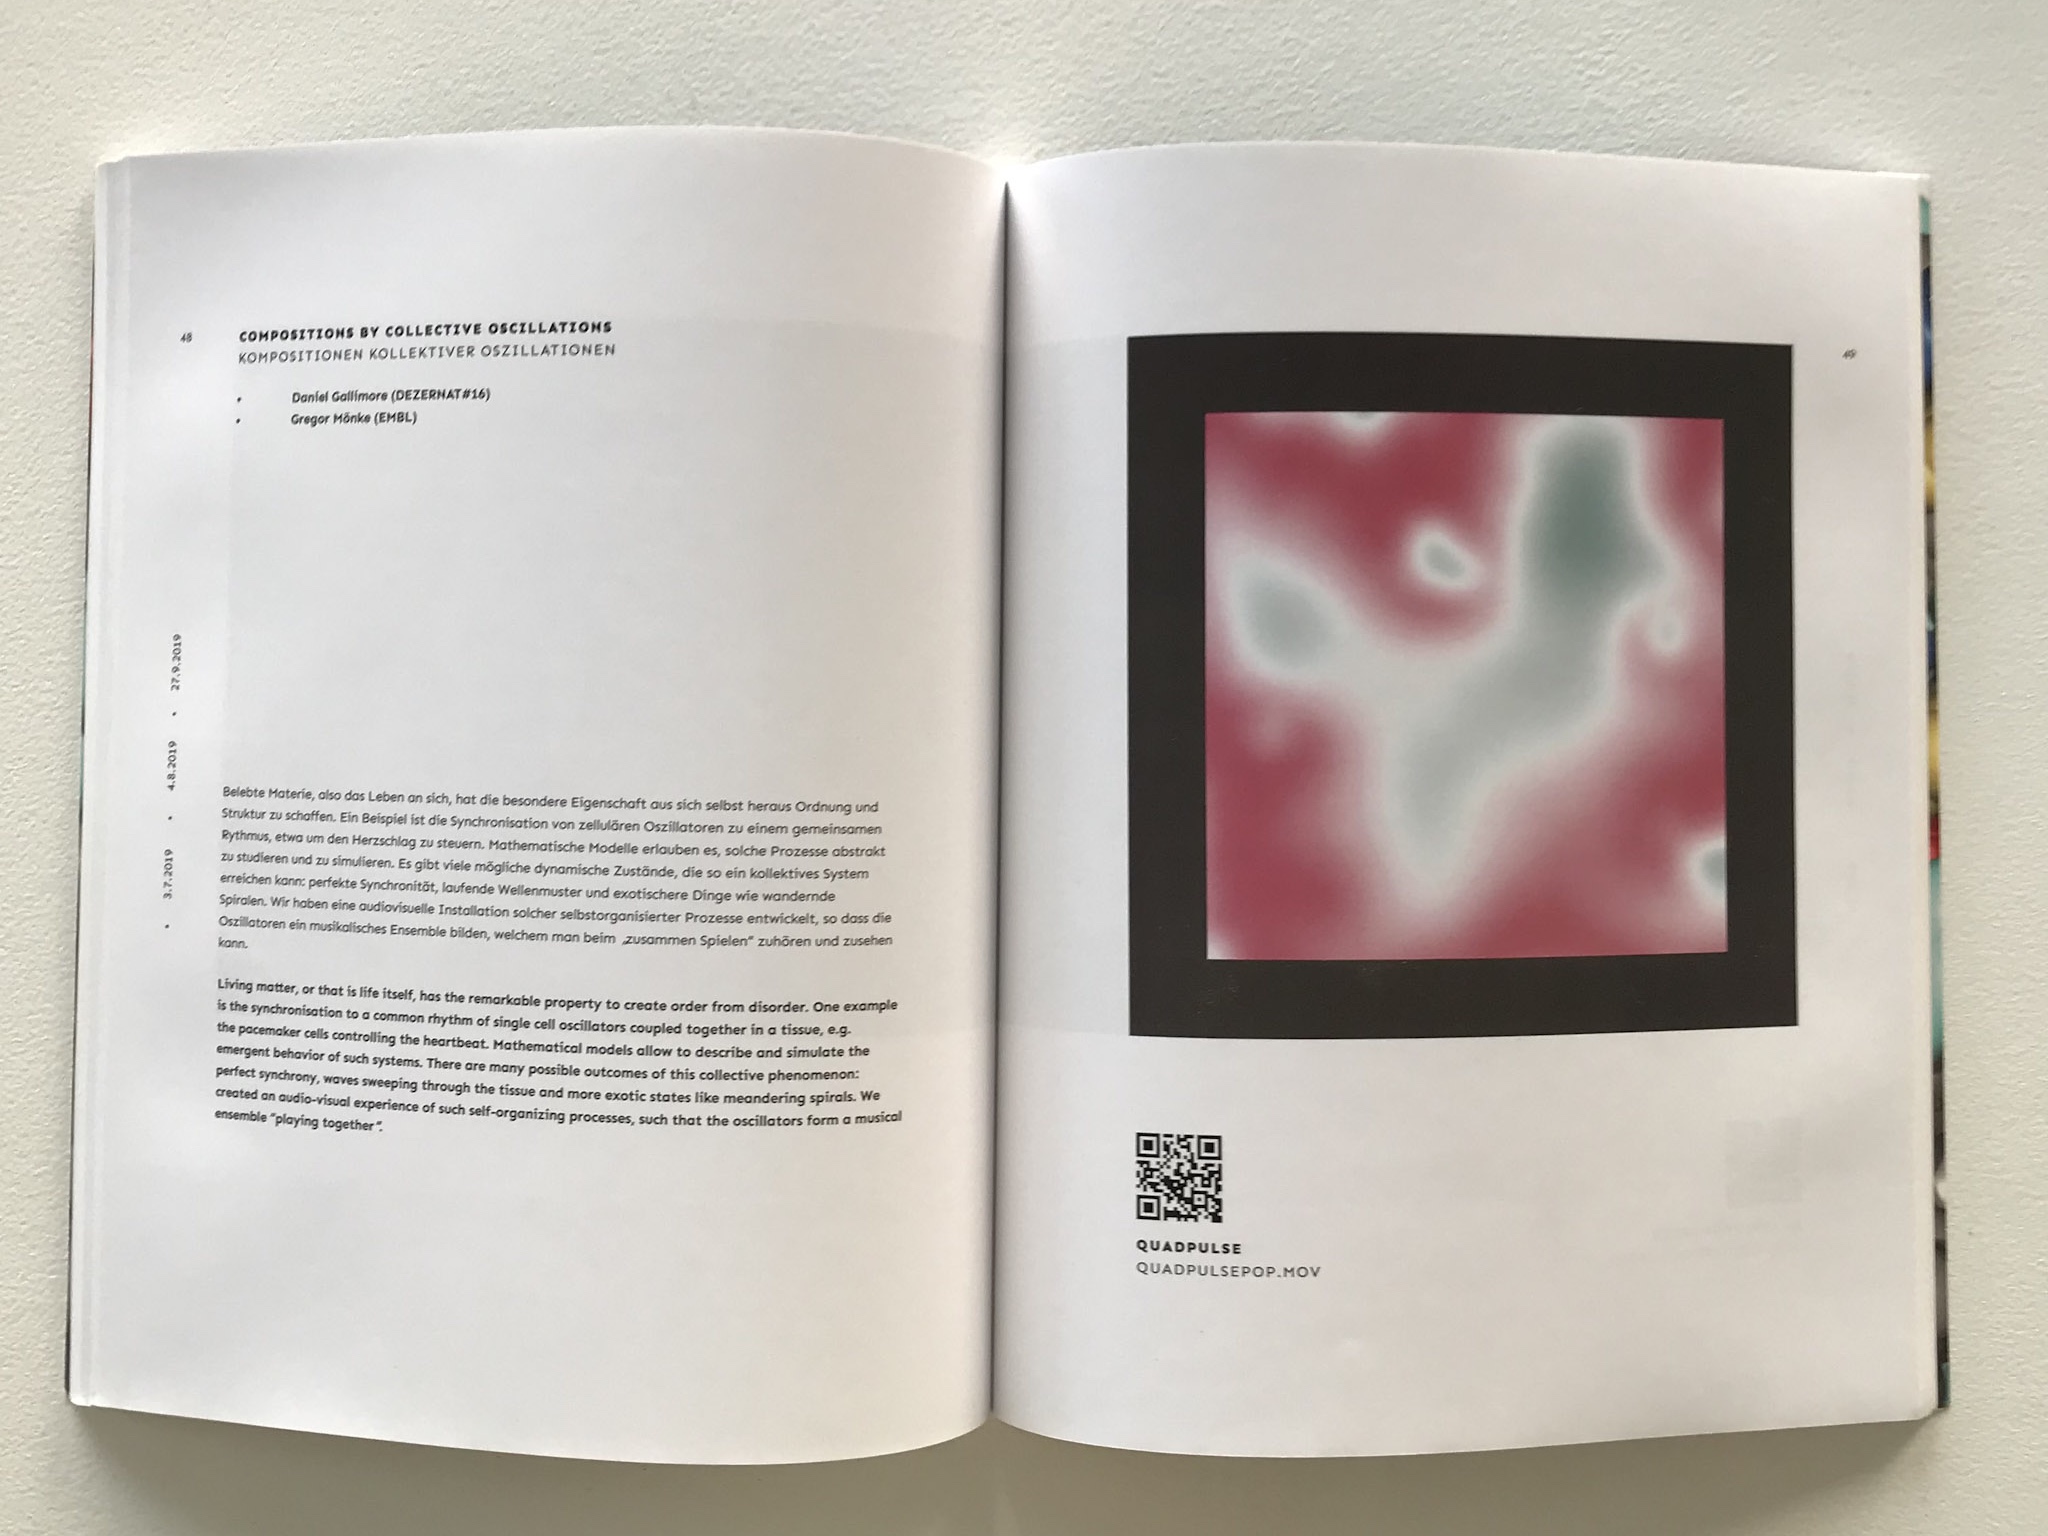 Der Aufgeschlagene REMIX-Katalog. Auf der linken Seite ist Text, auf der rechten Seite ein rot-graues Bild zu sehen.